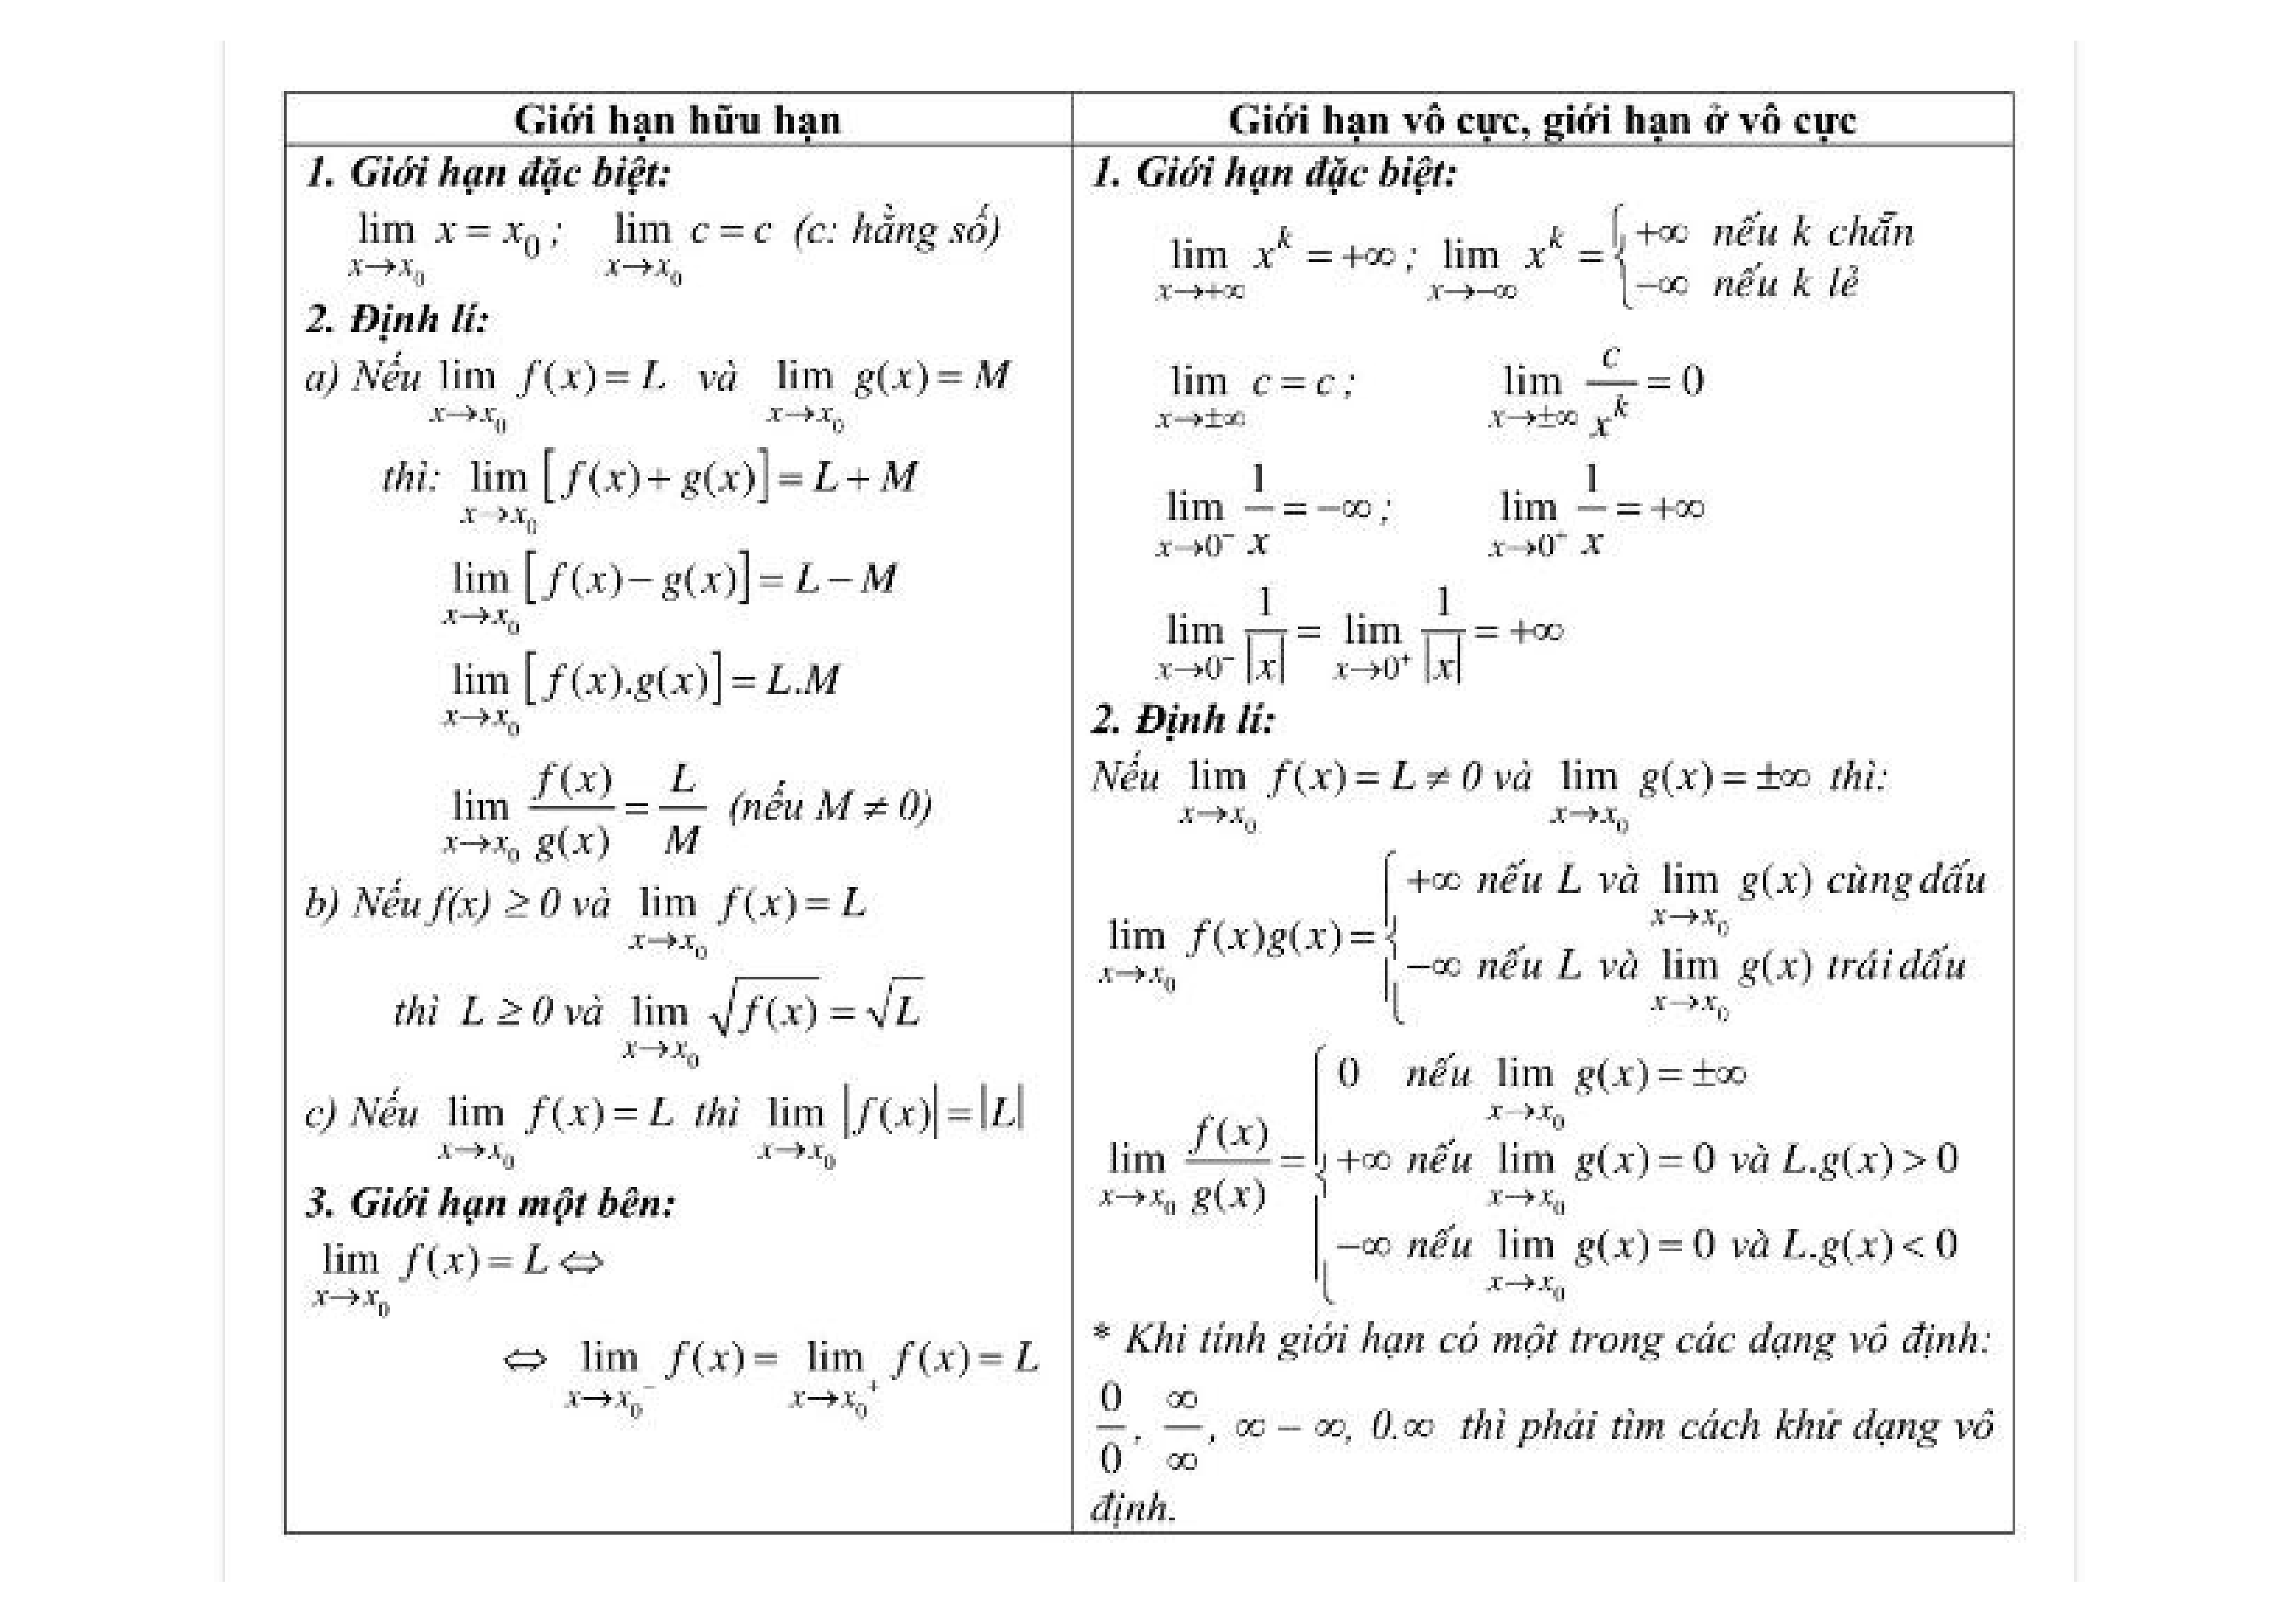 Các phương pháp giải giới hạn của hàm số trong môn Toán lớp 11?
